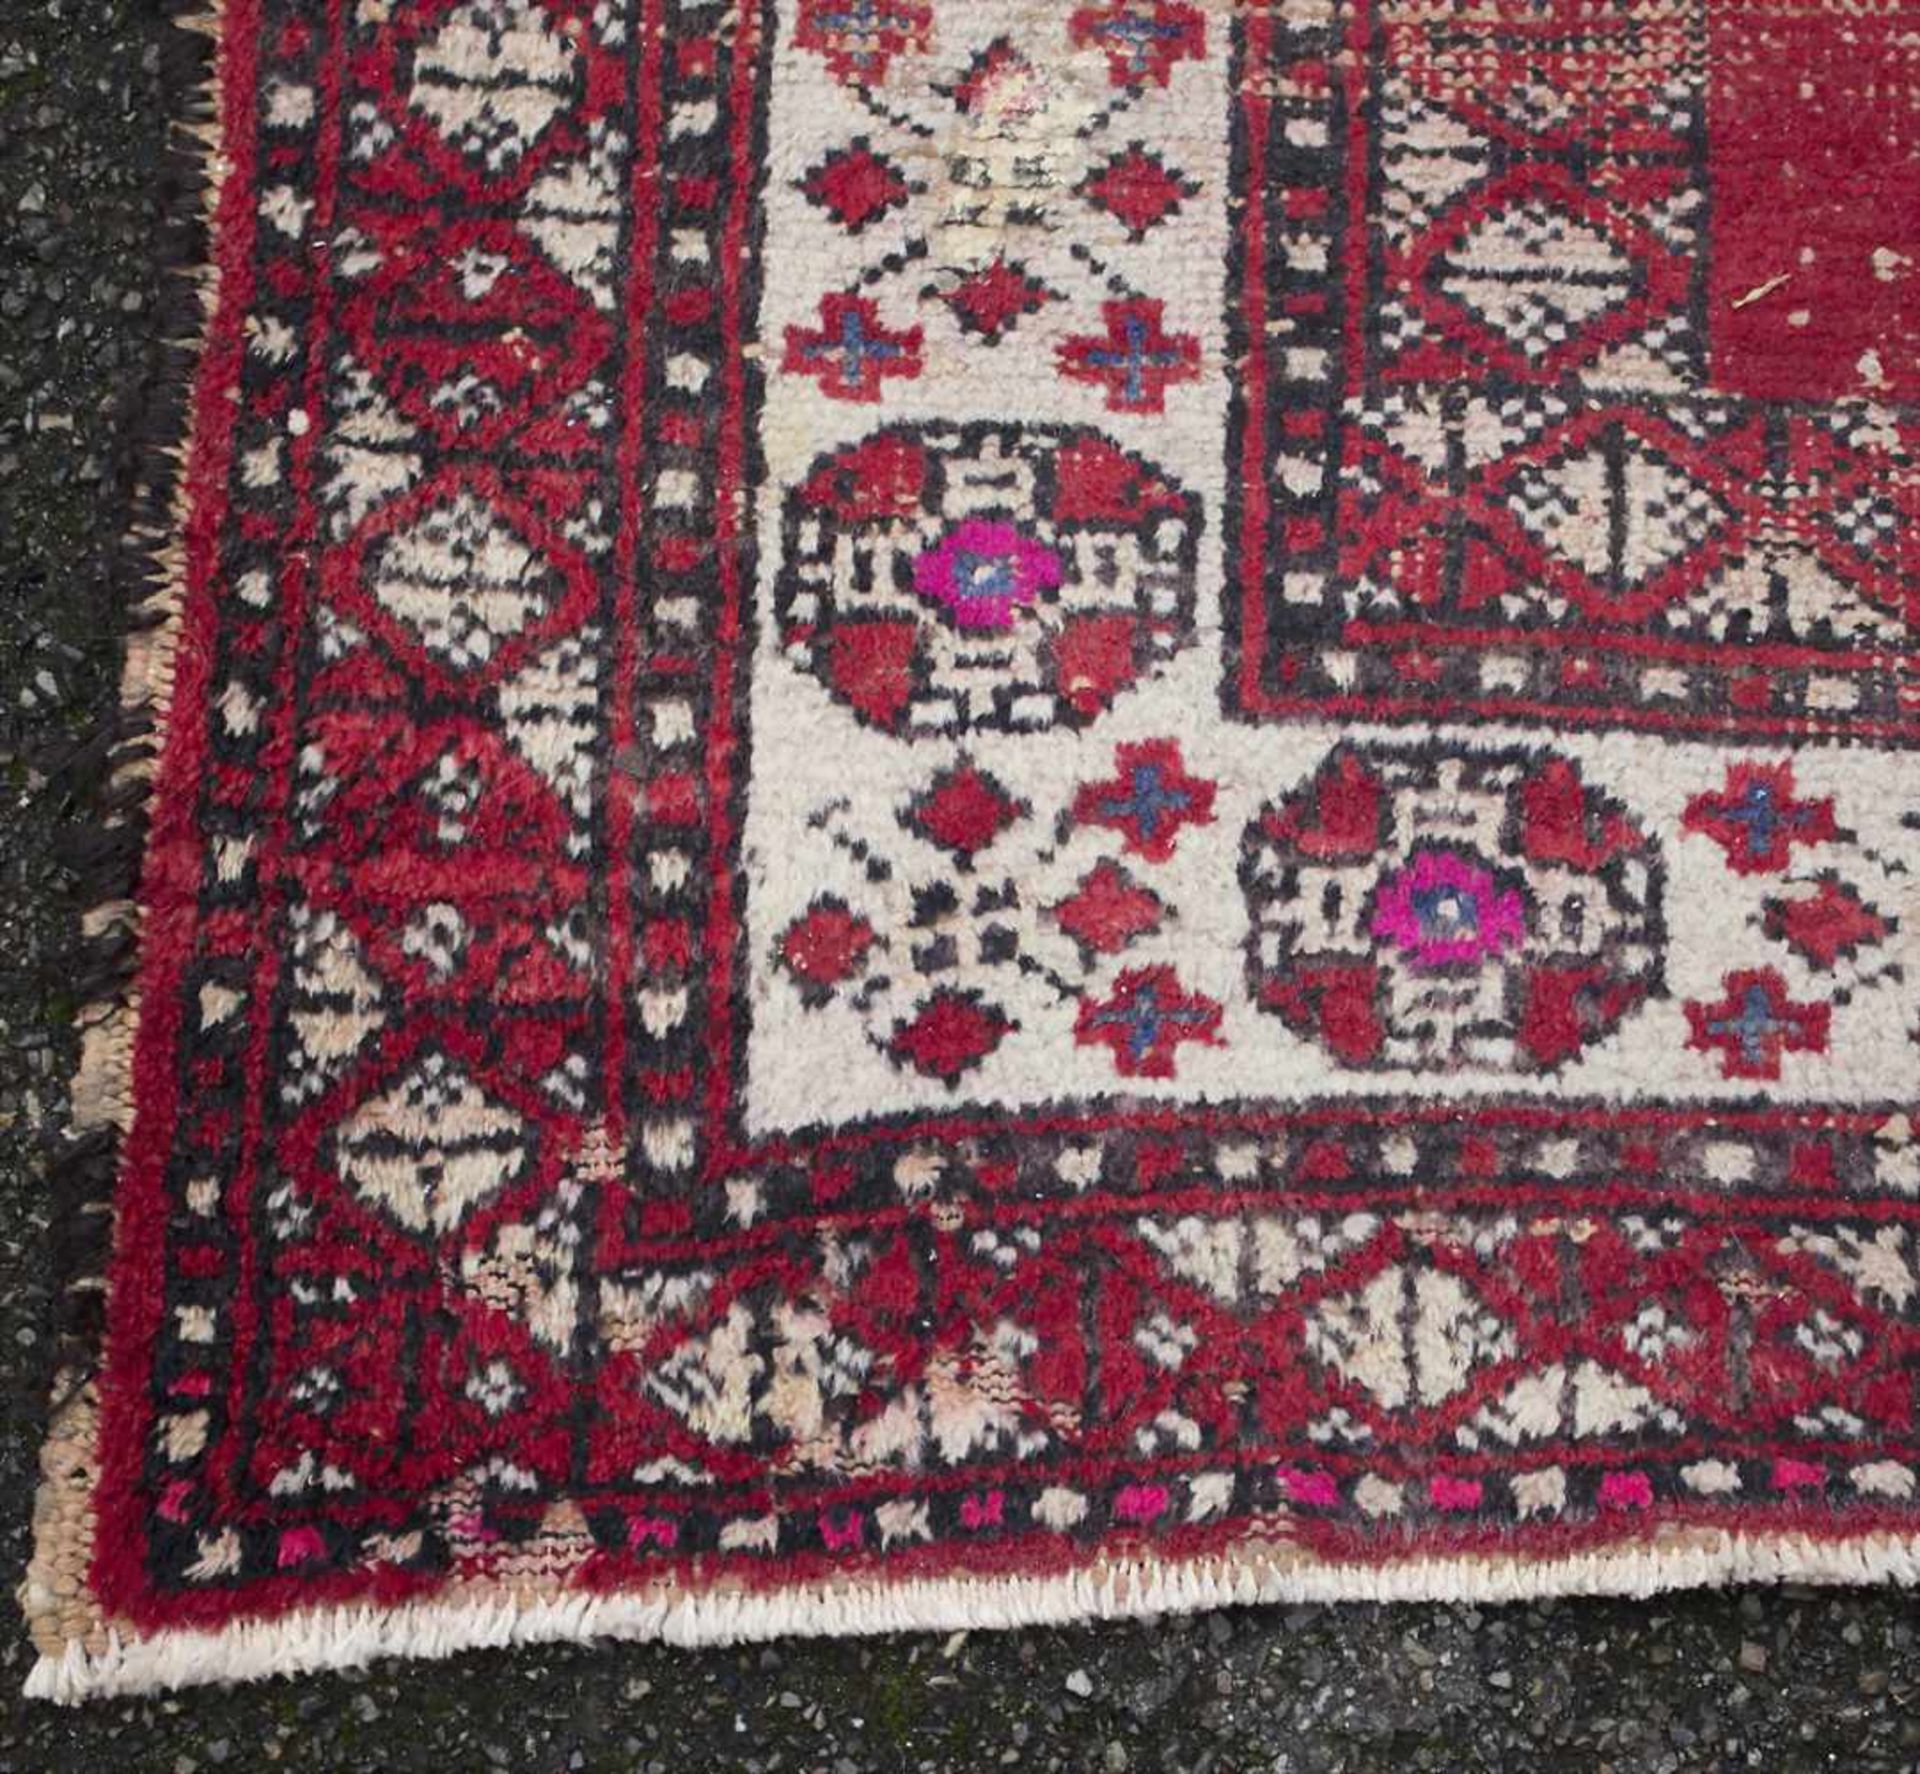 Orientteppich / An oriental carpetMaterial: Wolle auf Baumwolle, Maße: 208 x 122 cm, Zustand: - Image 5 of 5